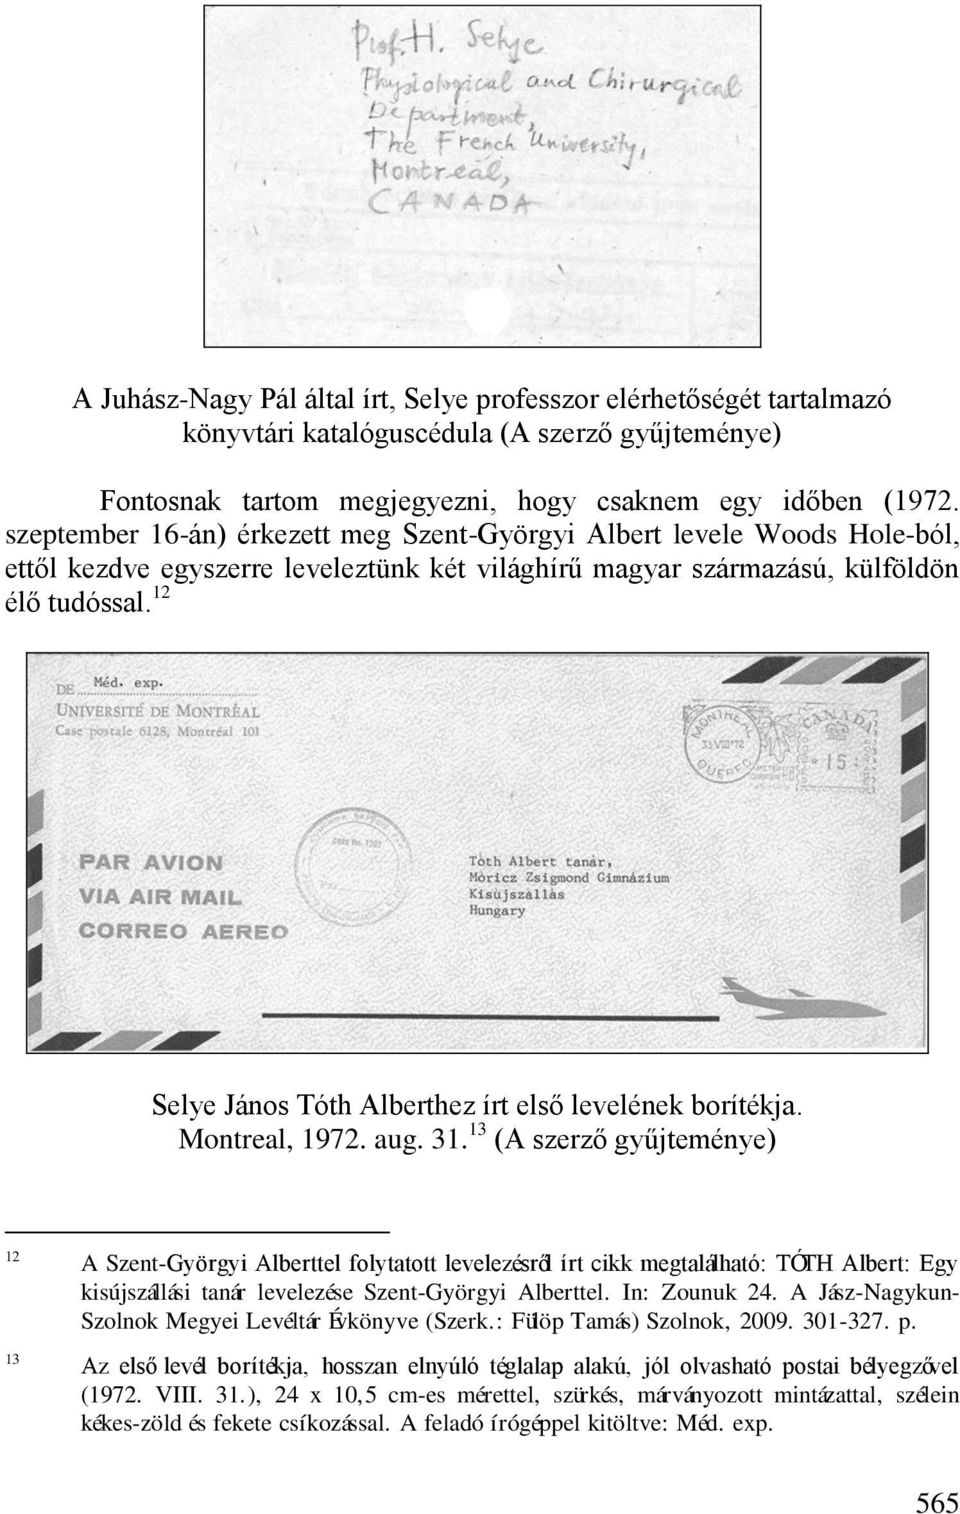 12 Selye János Tóth Alberthez írt első levelének borítékja. Montreal, 1972. aug. 31.